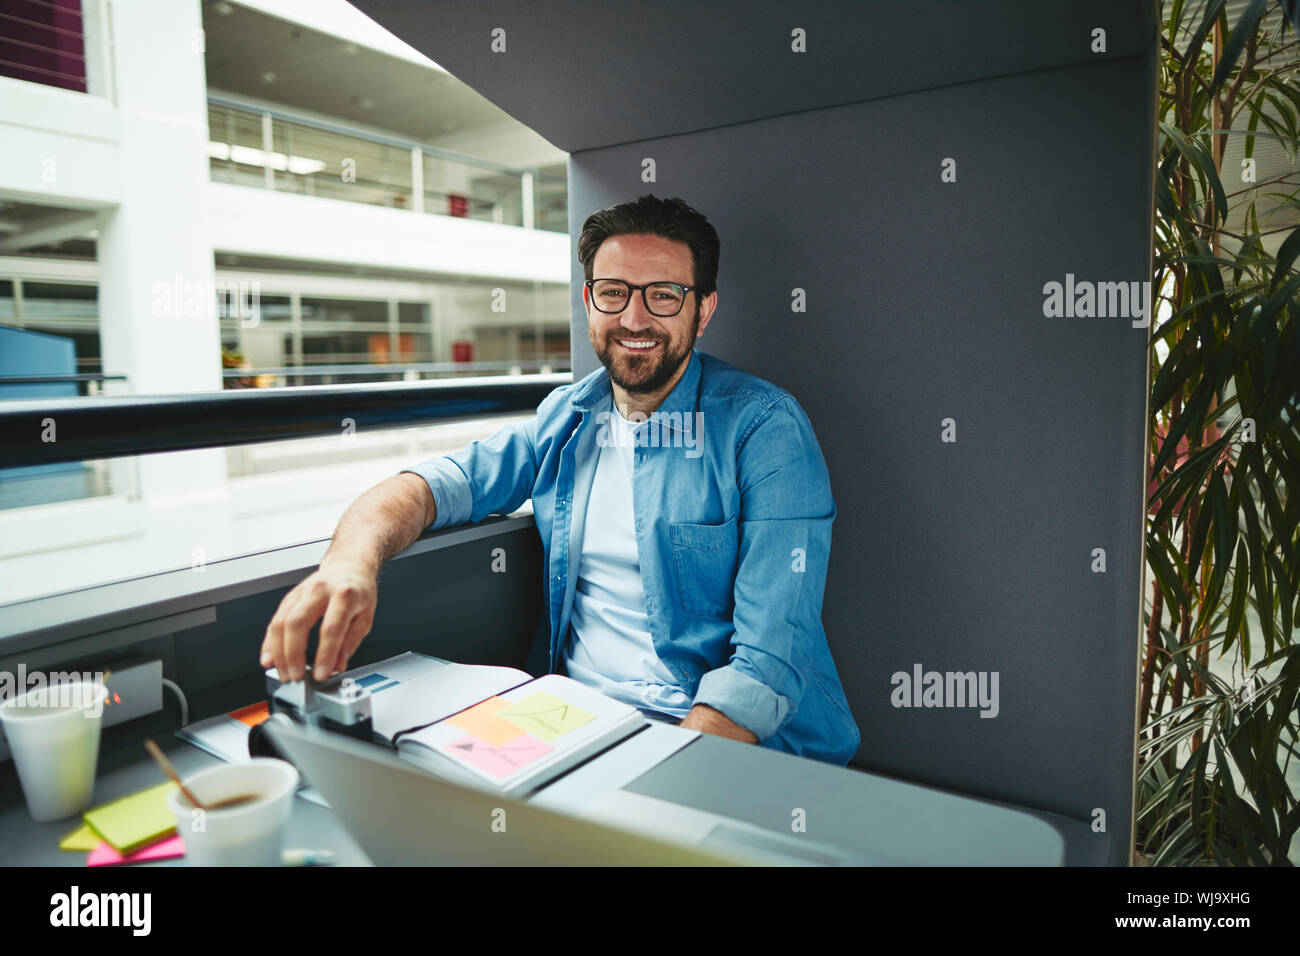 Lächelnd Creative Professional über Noten und arbeitet an einem Laptop, während allein in einem Büro pod Stockfoto